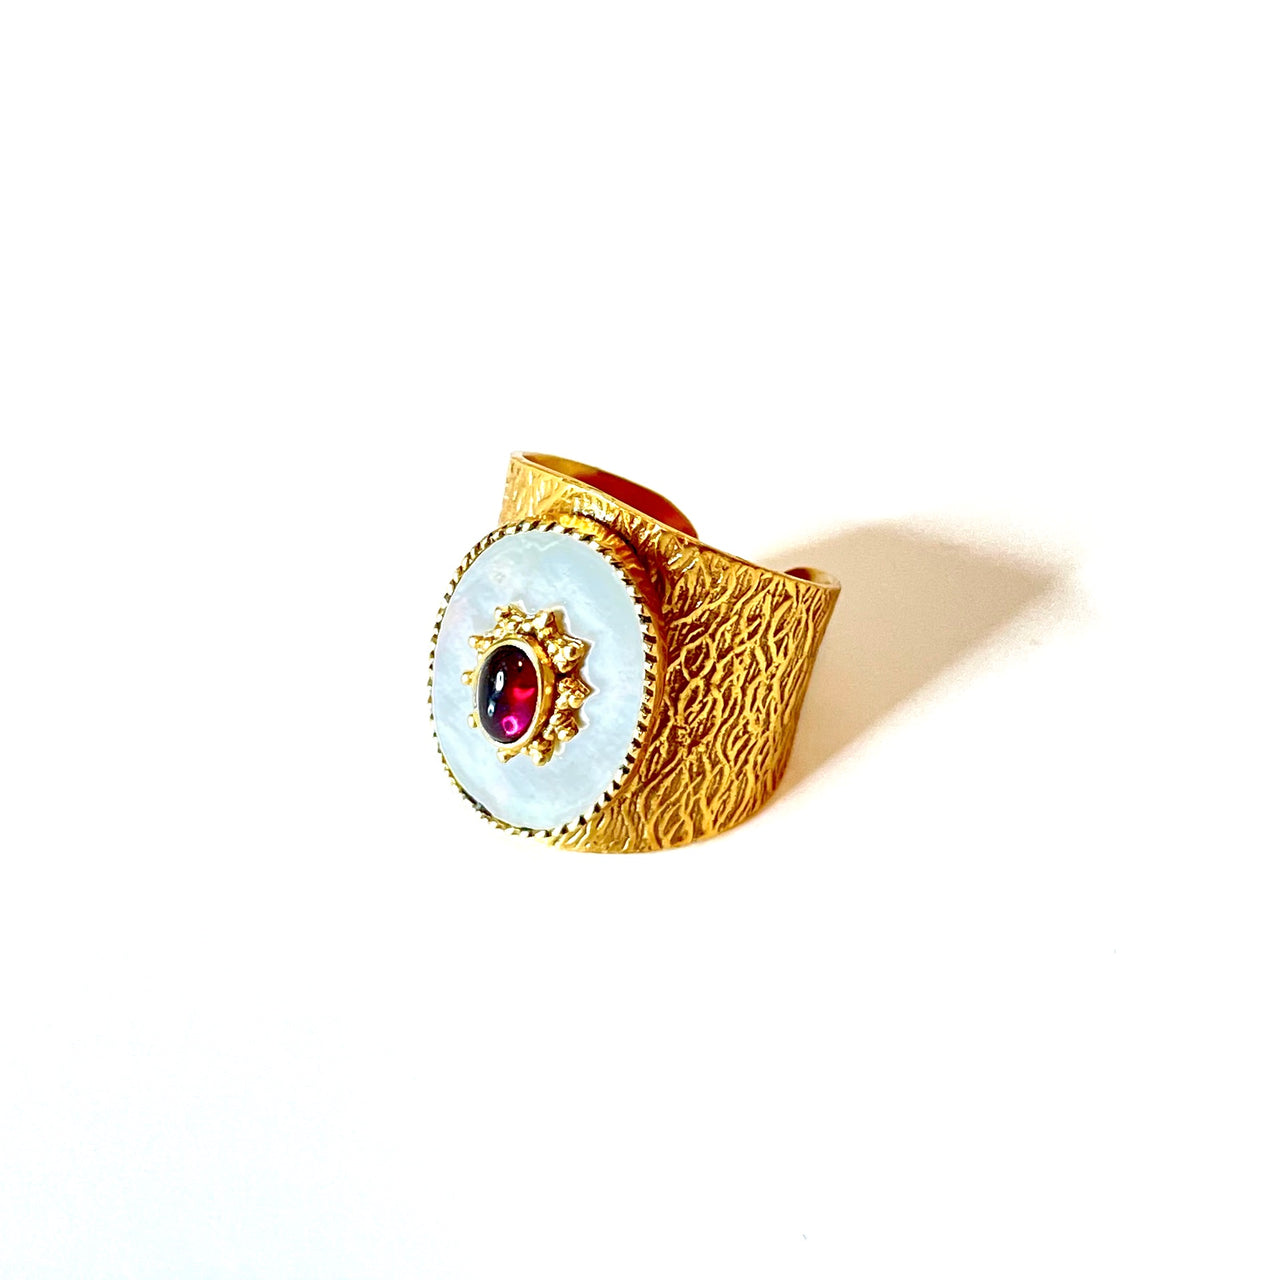 Espectacular anillo de bronce con baño de oro. El detalle central es de nacar con un rubí. Este anillo es ajustable lo que lo hace perfecto. Además es super combinable con tu look favorito. Lateral